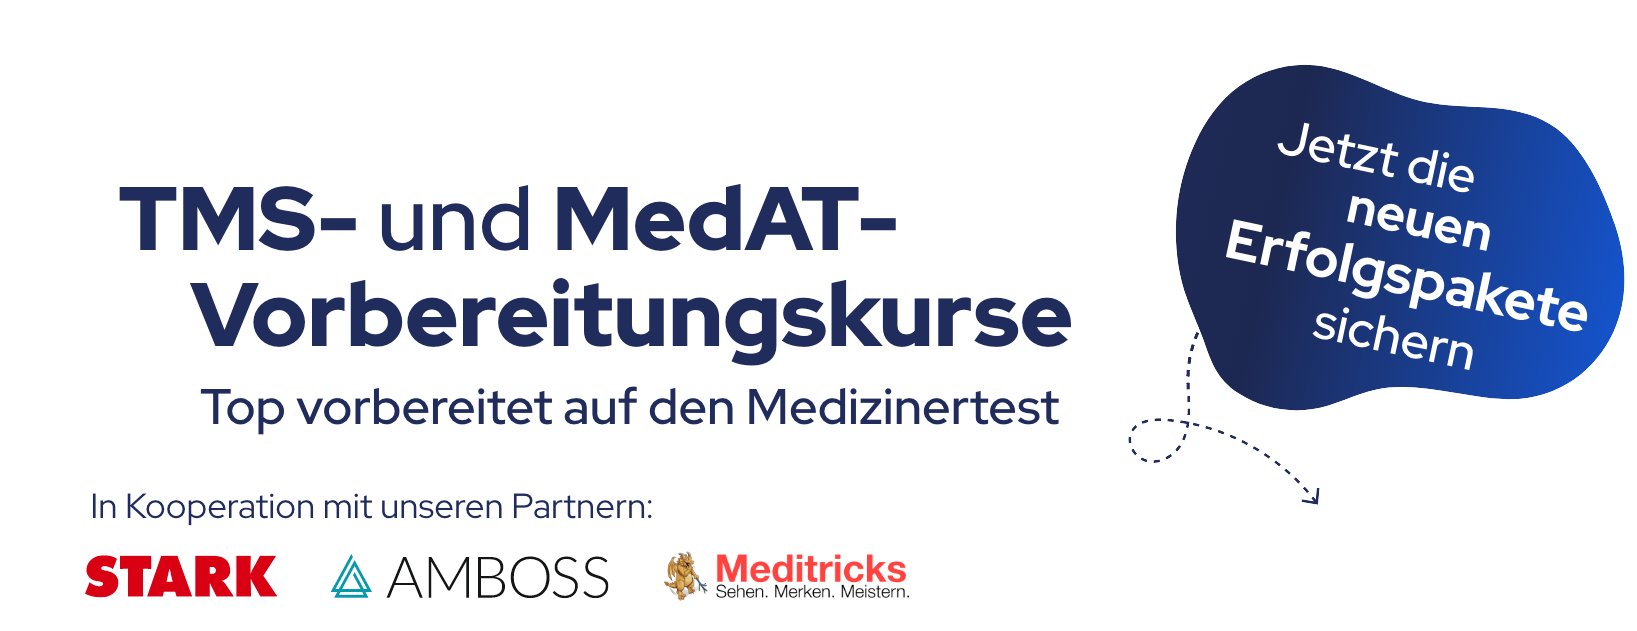 TMS- und MedAT-Vorbereitungskurse - Top vorbereitet auf den Medizinertest